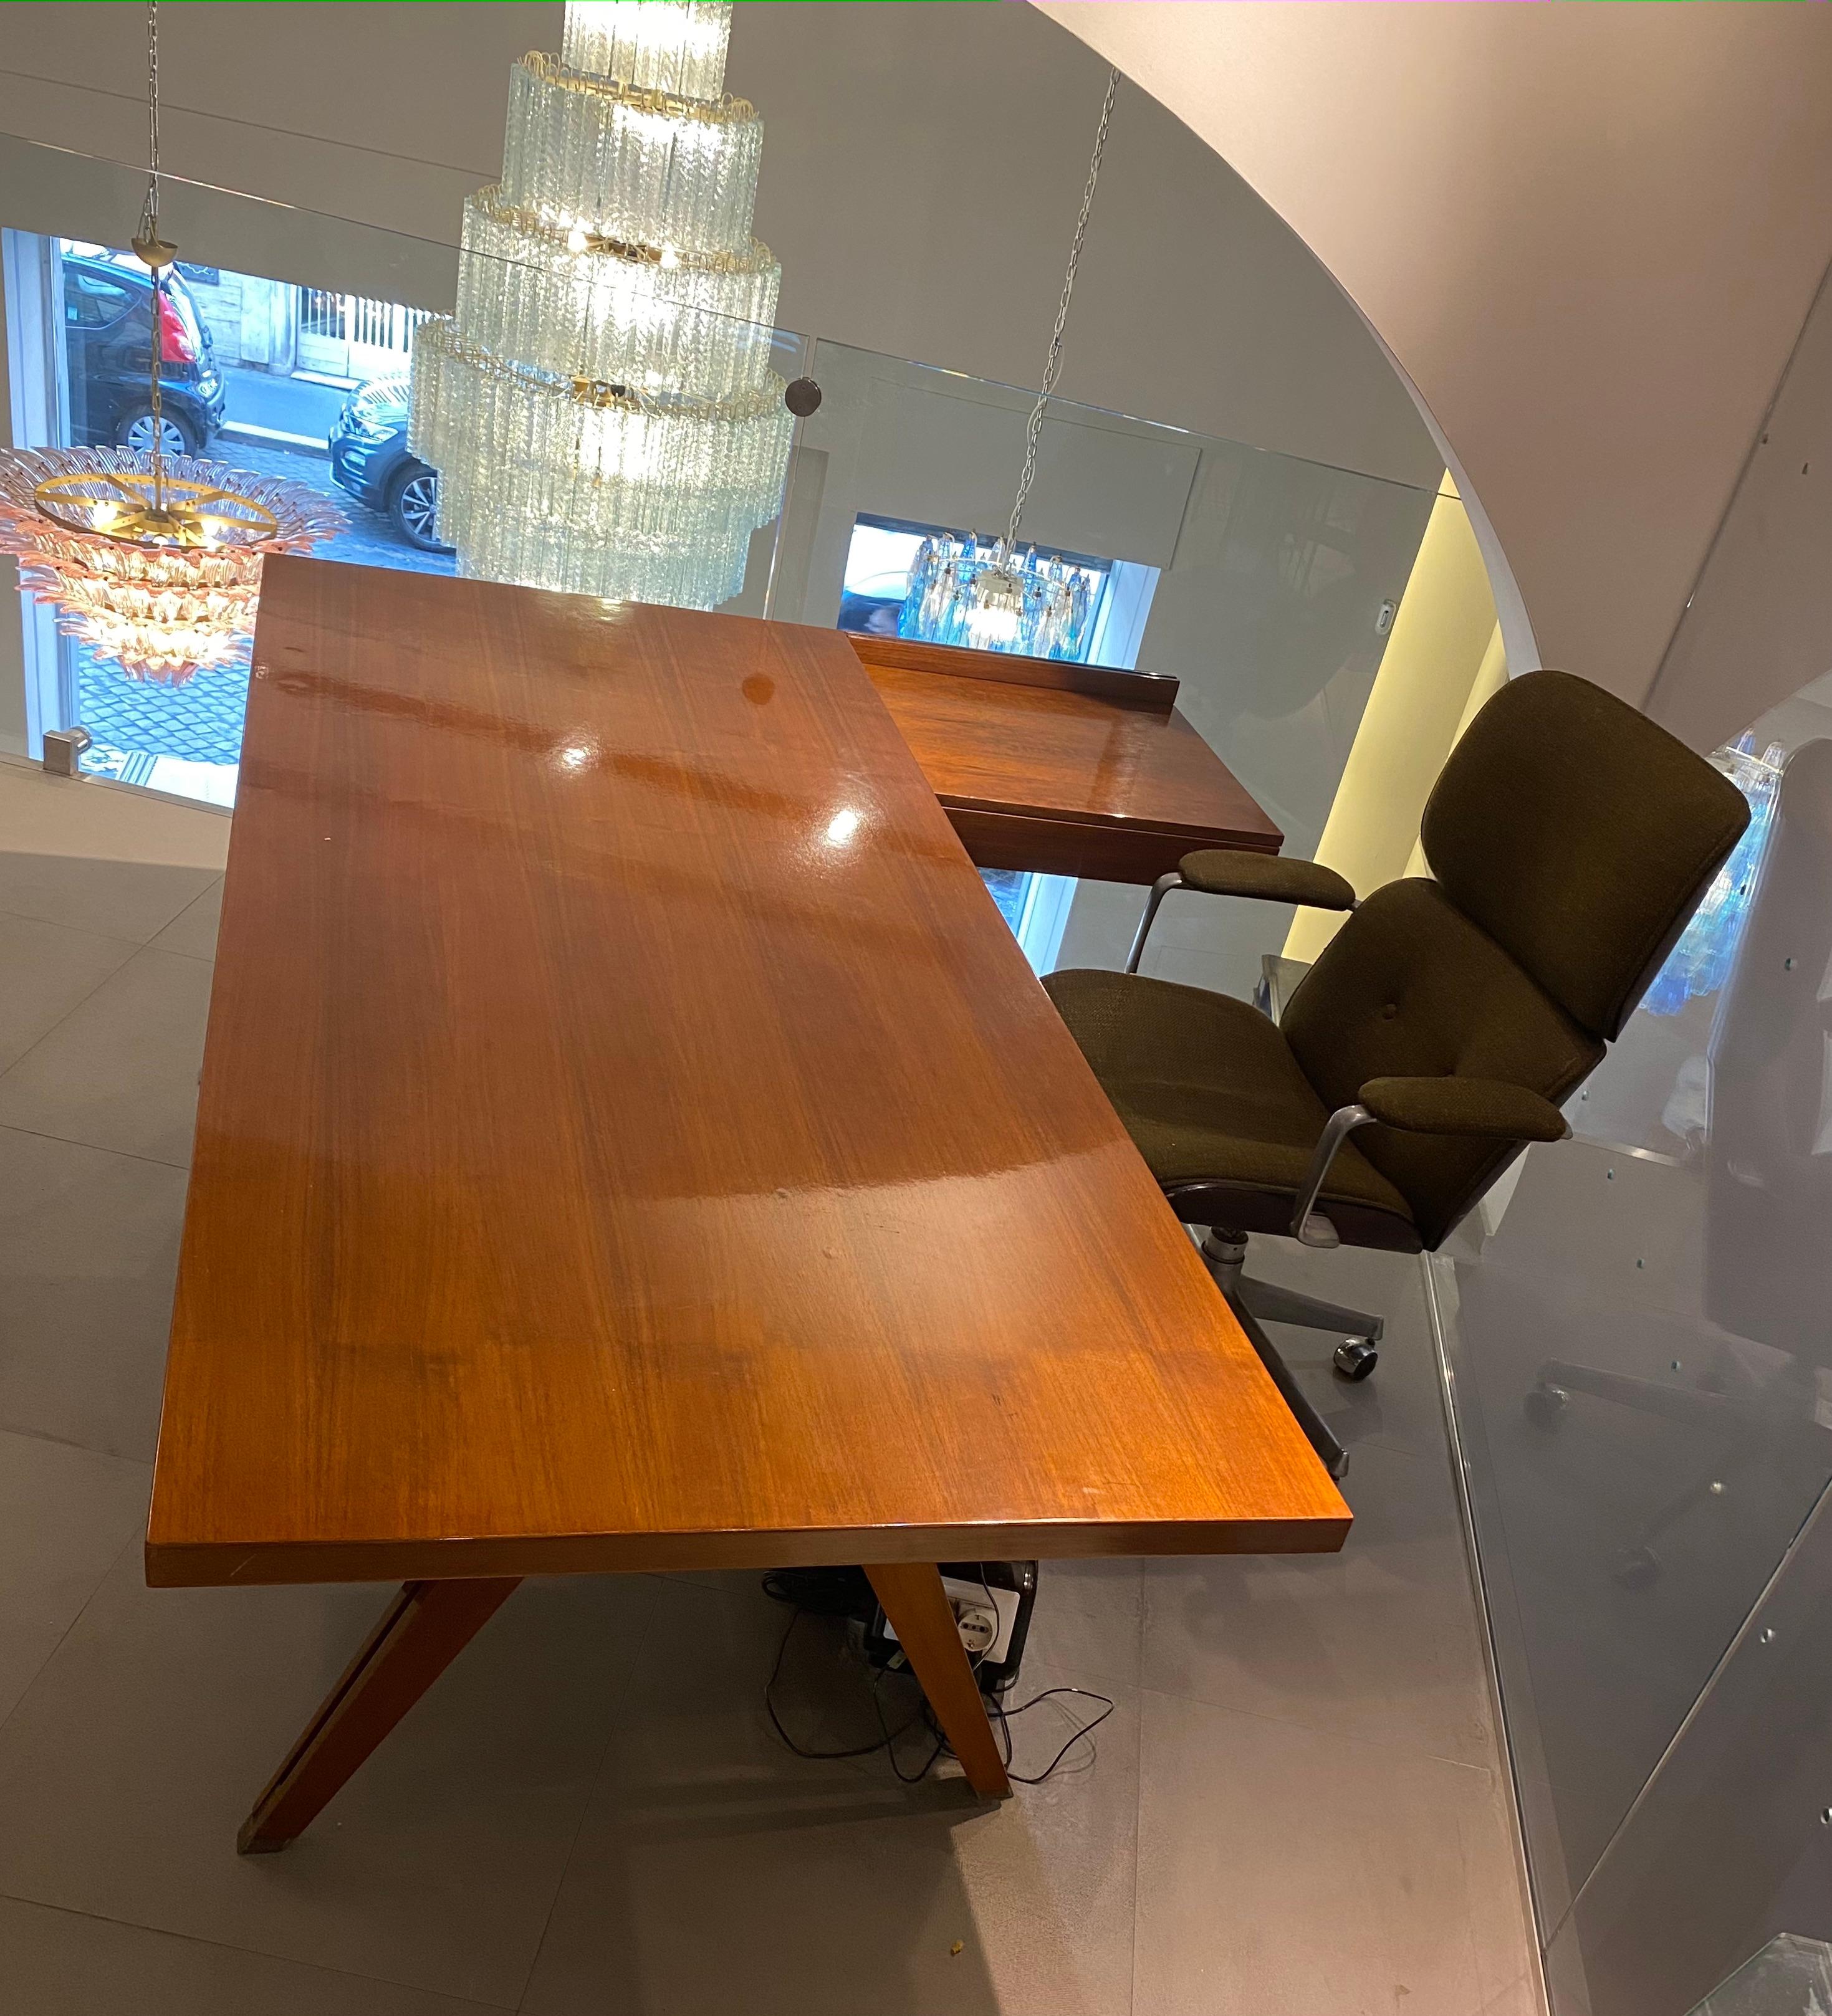 Dieser große Terni-Schreibtisch wurde 1958 von Ico Parisi für MIM (Mobili Italiani Moderni) in Rom, Italien, entworfen. Er hat eine rechteckige Tischplatte und enthält auf einer Seite einen Block mit drei Schubladen und auf der Rückseite einen Block